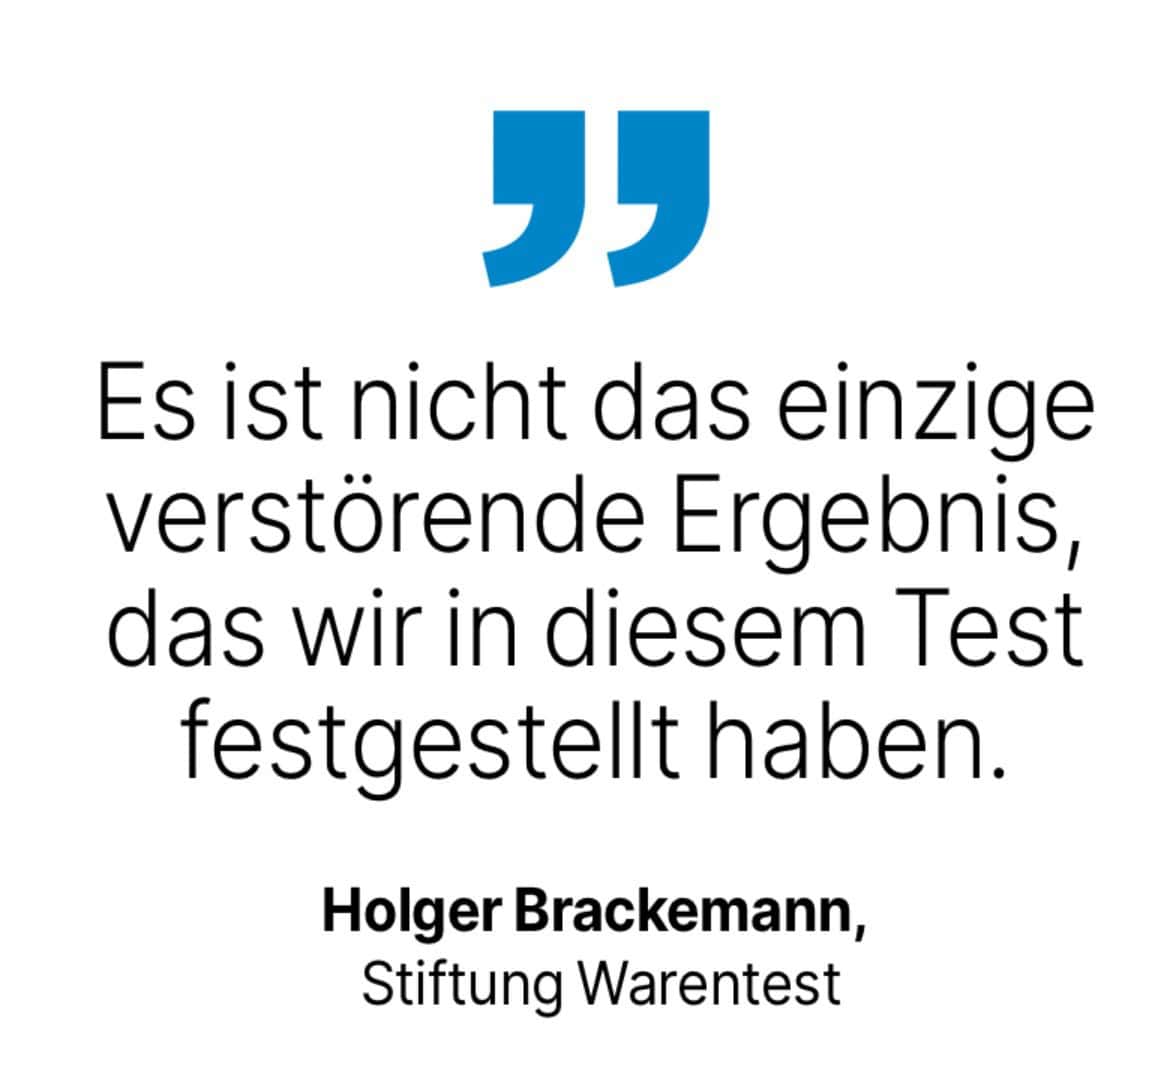 Holger Brackemann, Stiftung Warentest: Es ist nicht das einzige verstörende Ergebnis, das wir in diesem Test festgestellt haben.